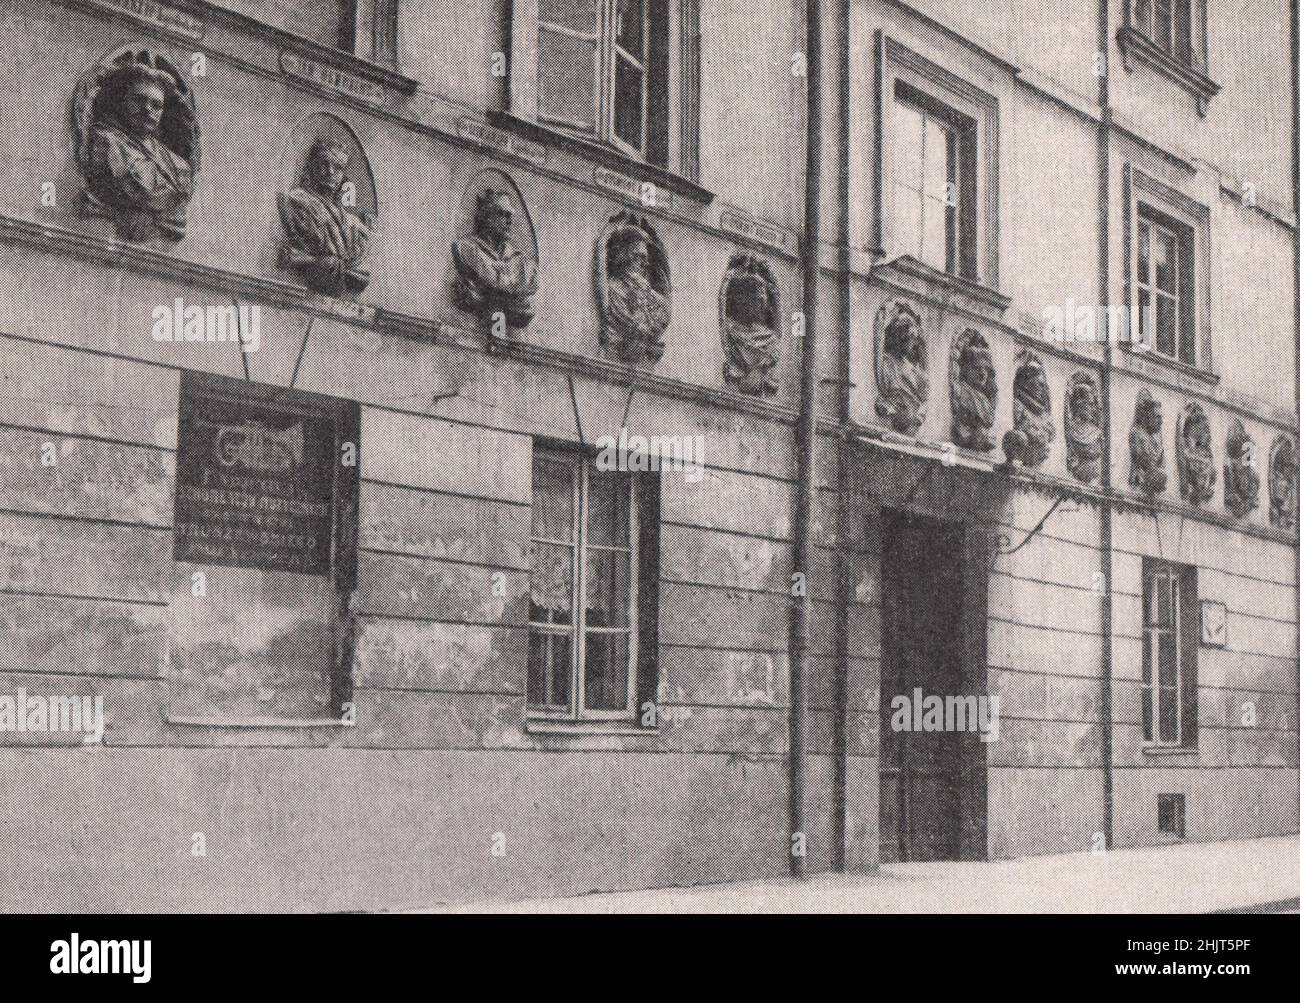 Retratos de medallones de los reyes de Polonia en una vivienda de Varsovia (1923) Foto de stock